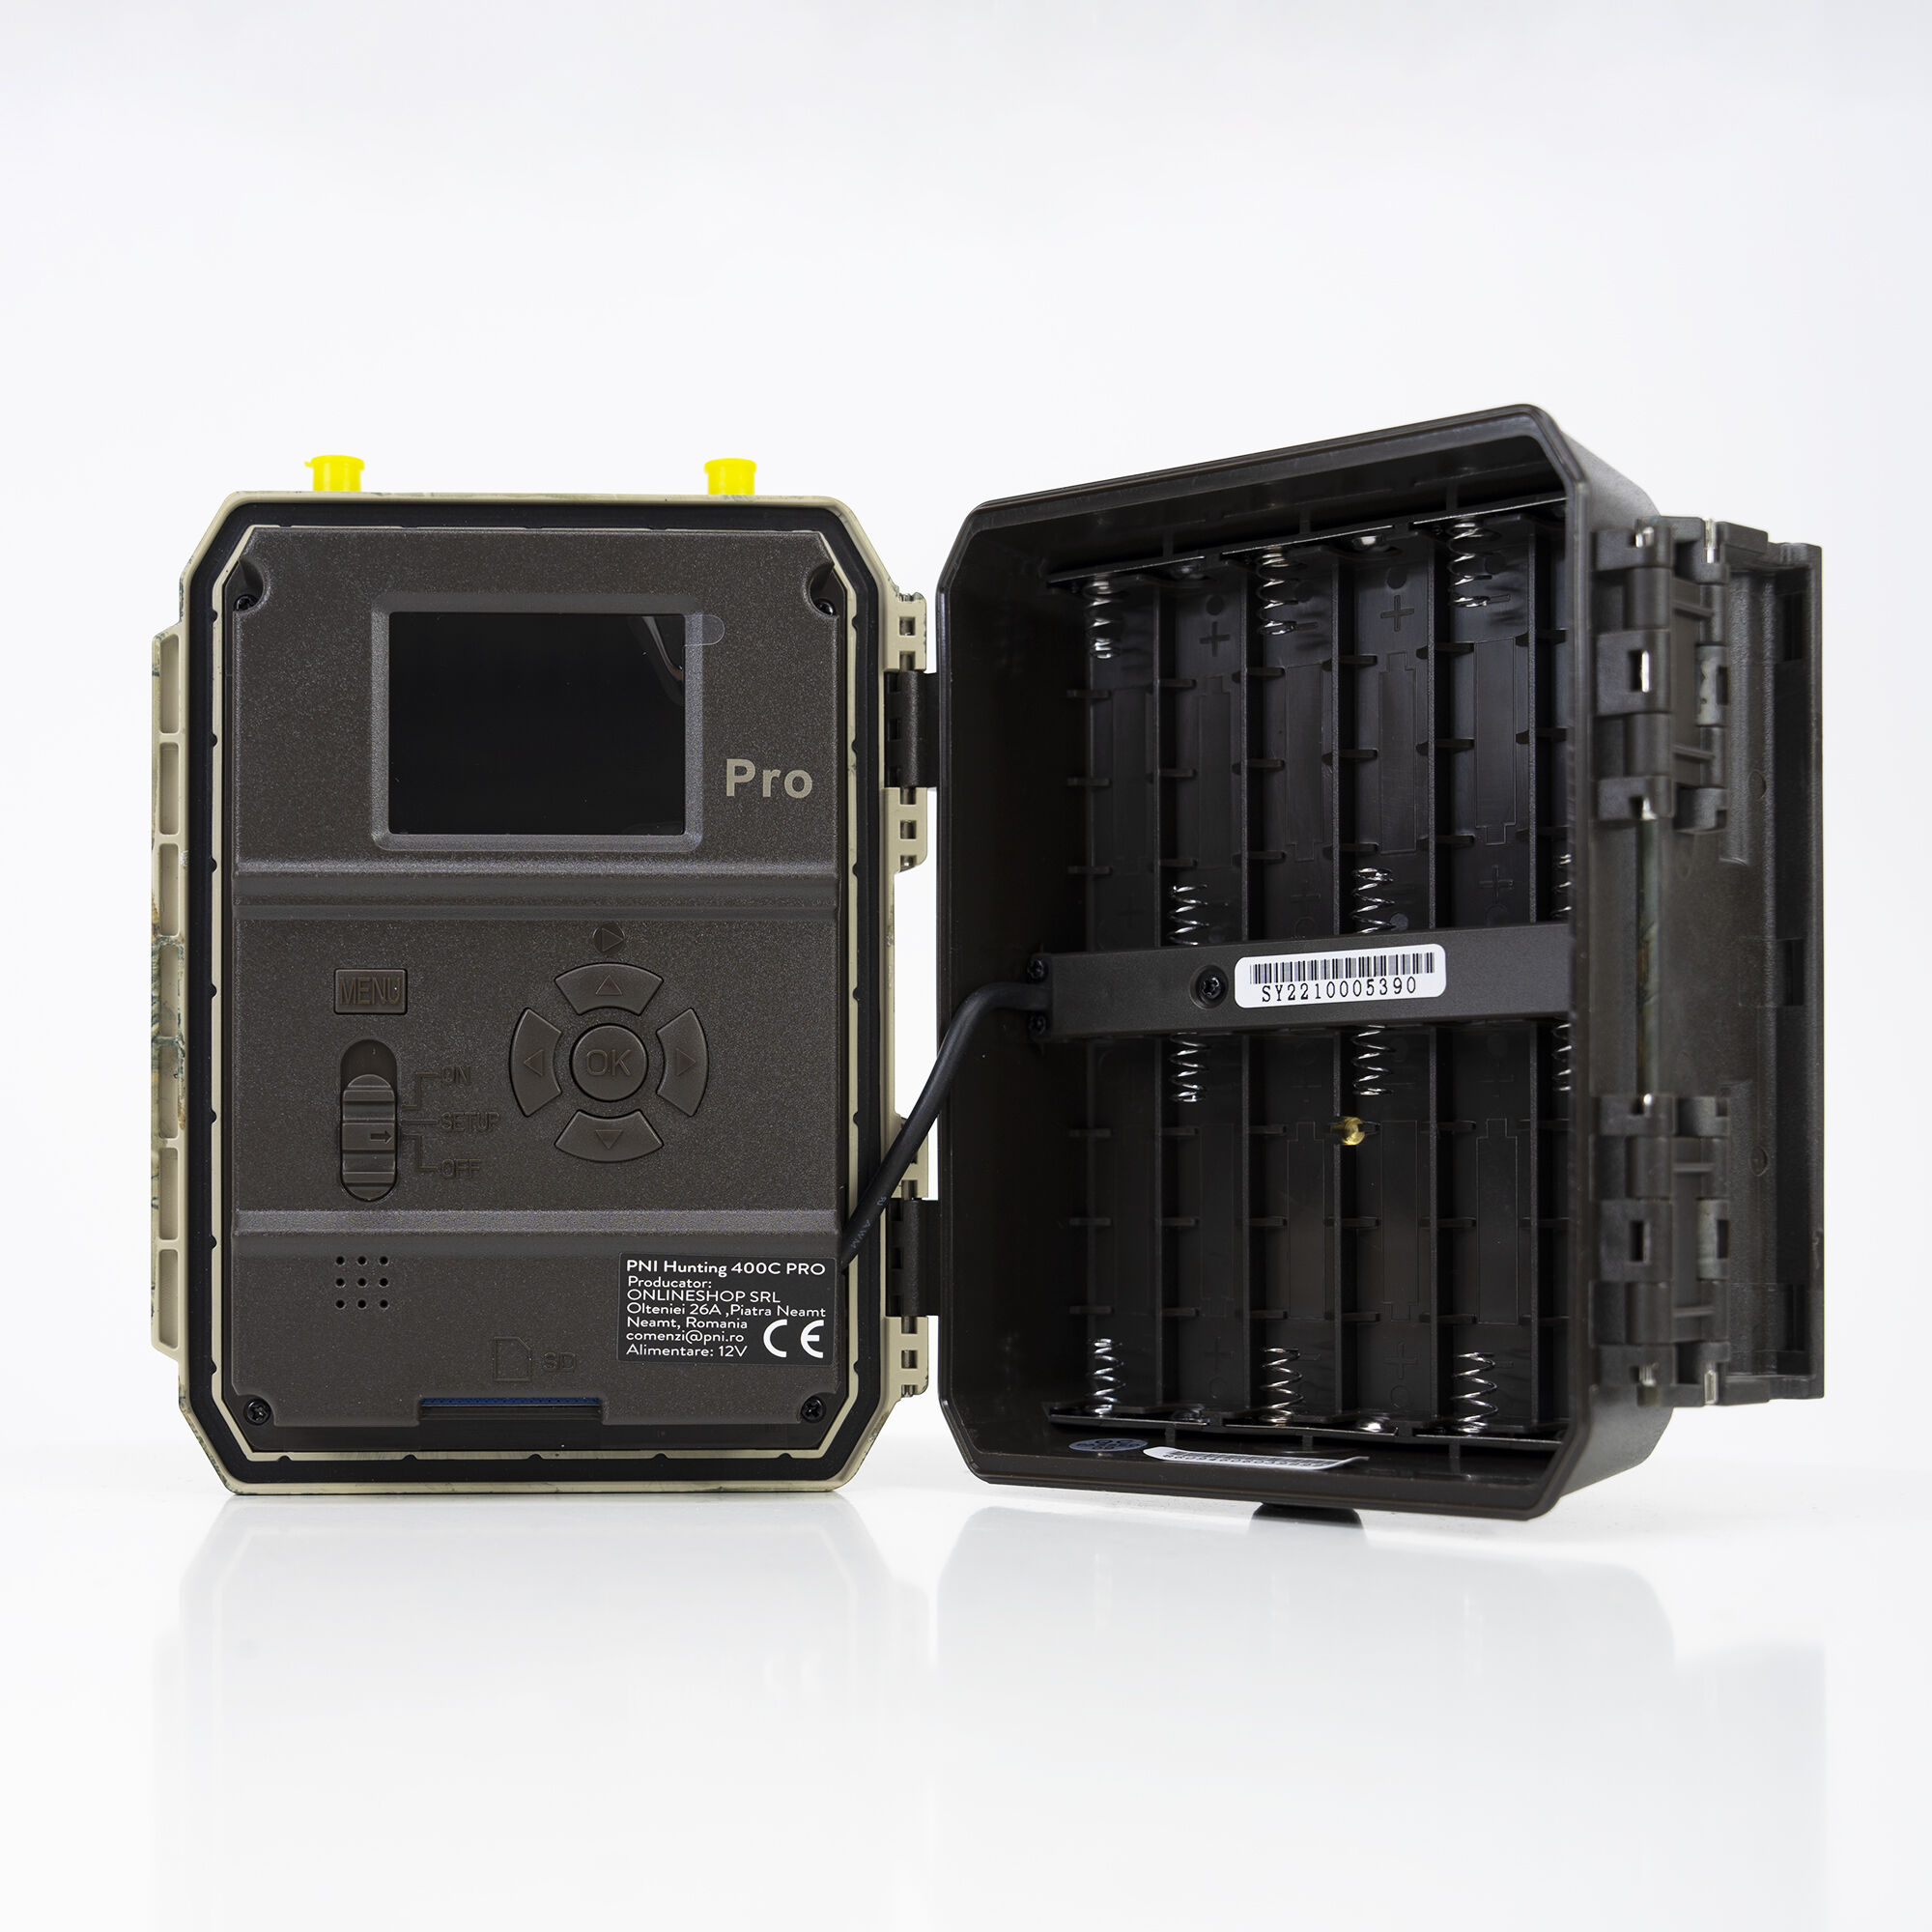 PNI Hunting 400C PRO 24MP Wildkamera mit 4G LTE Internet, GPS - Bild 4